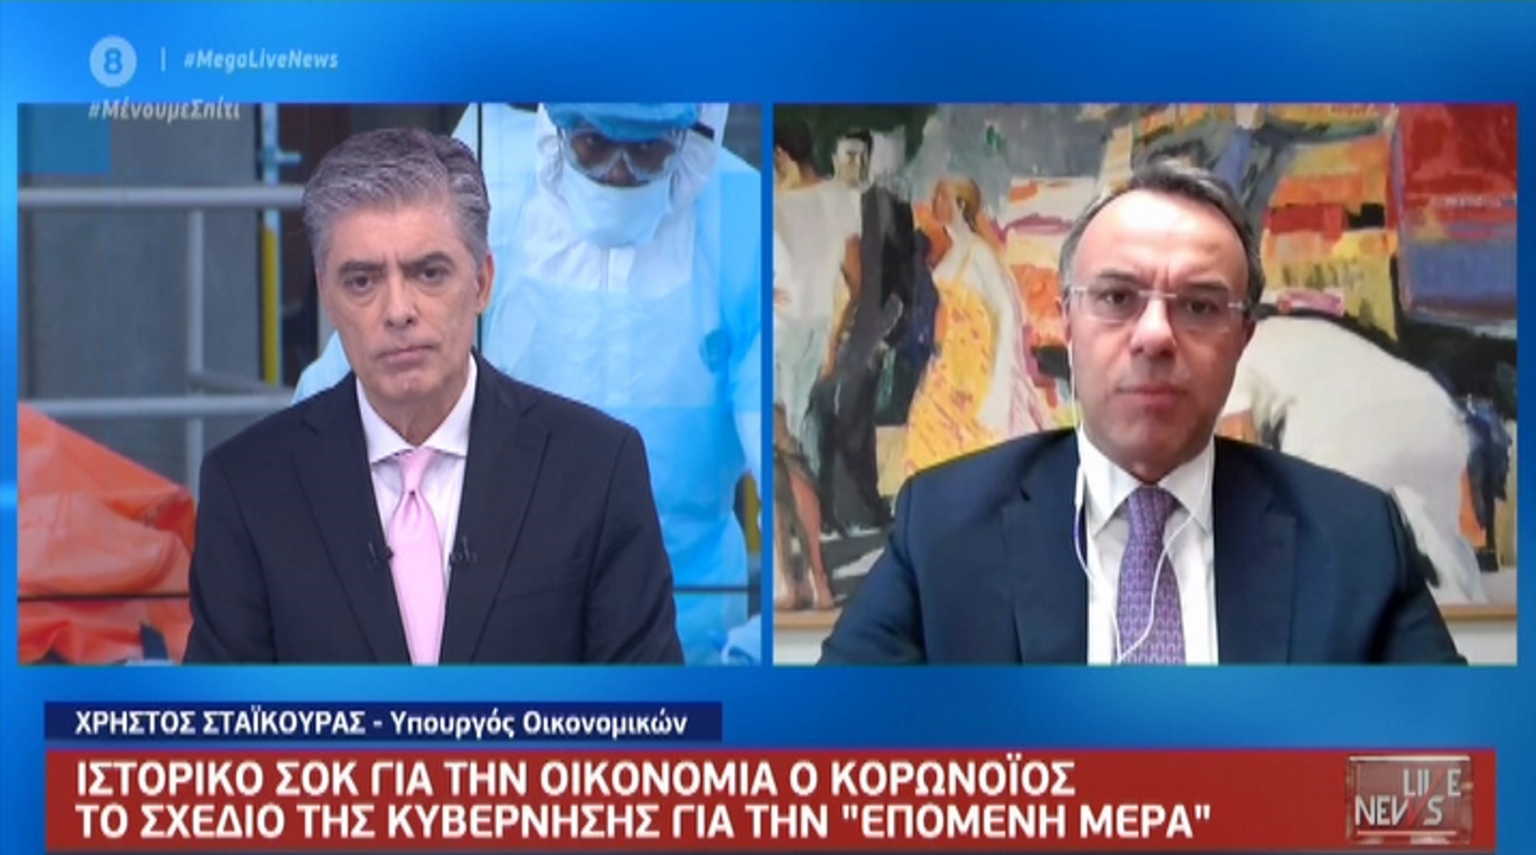 Σταϊκούρας στο Live News: Δάνεια σε επιχειρήσεις, στήριξη στην οικονομία και Eurogroup